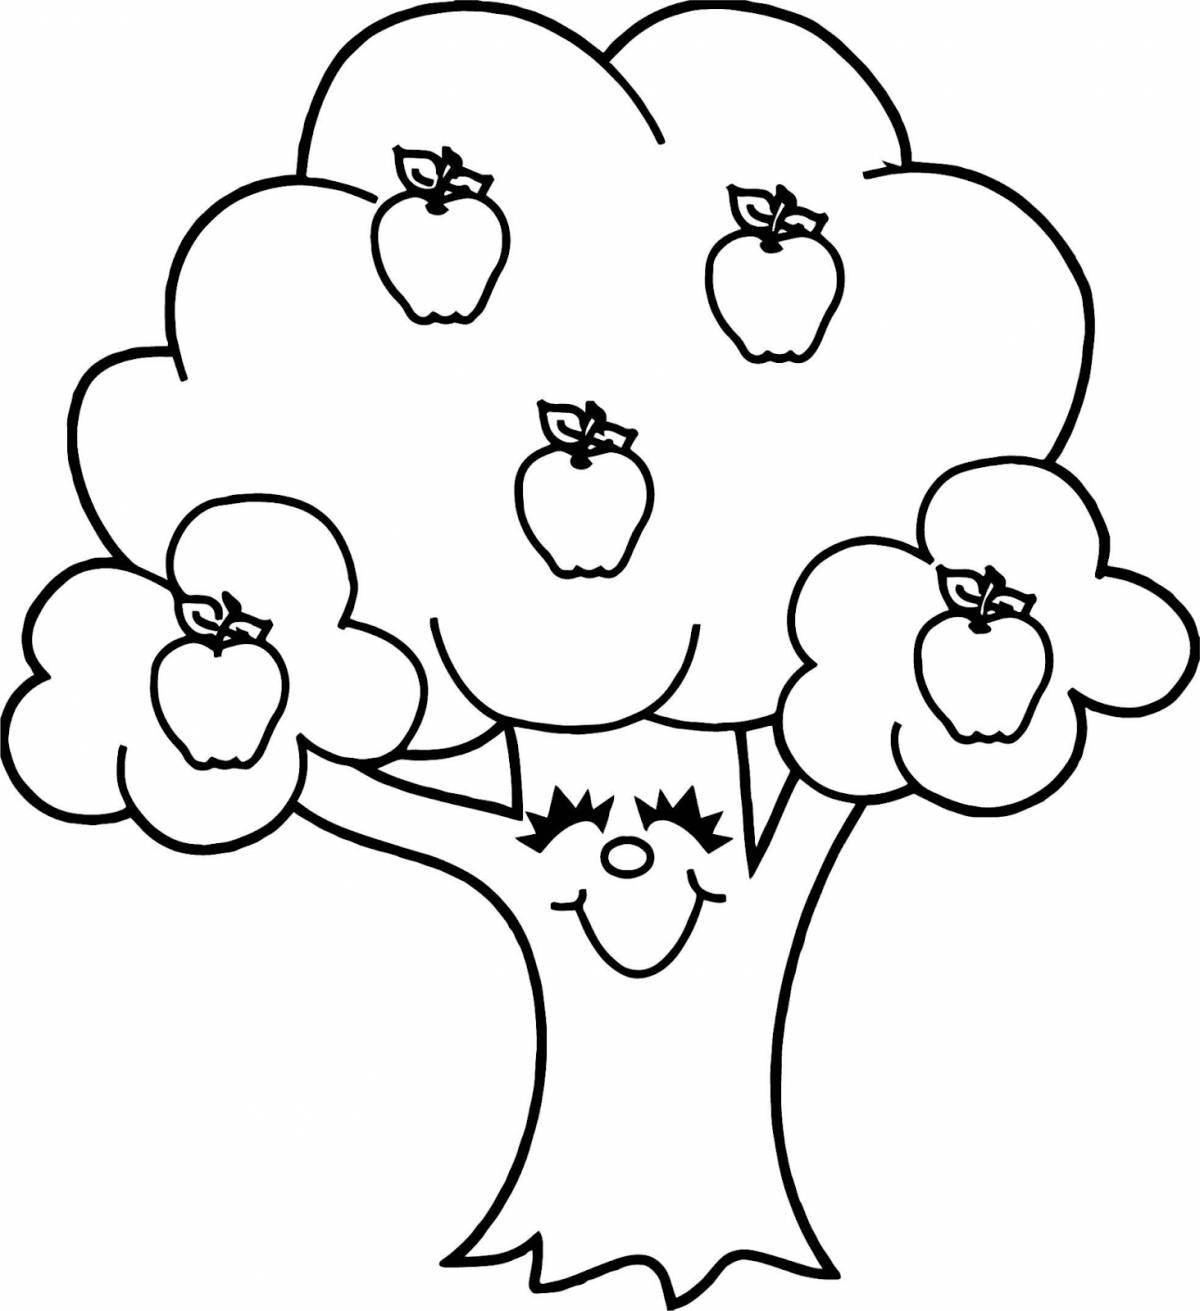 Красочная яблоня с яблоками для детей